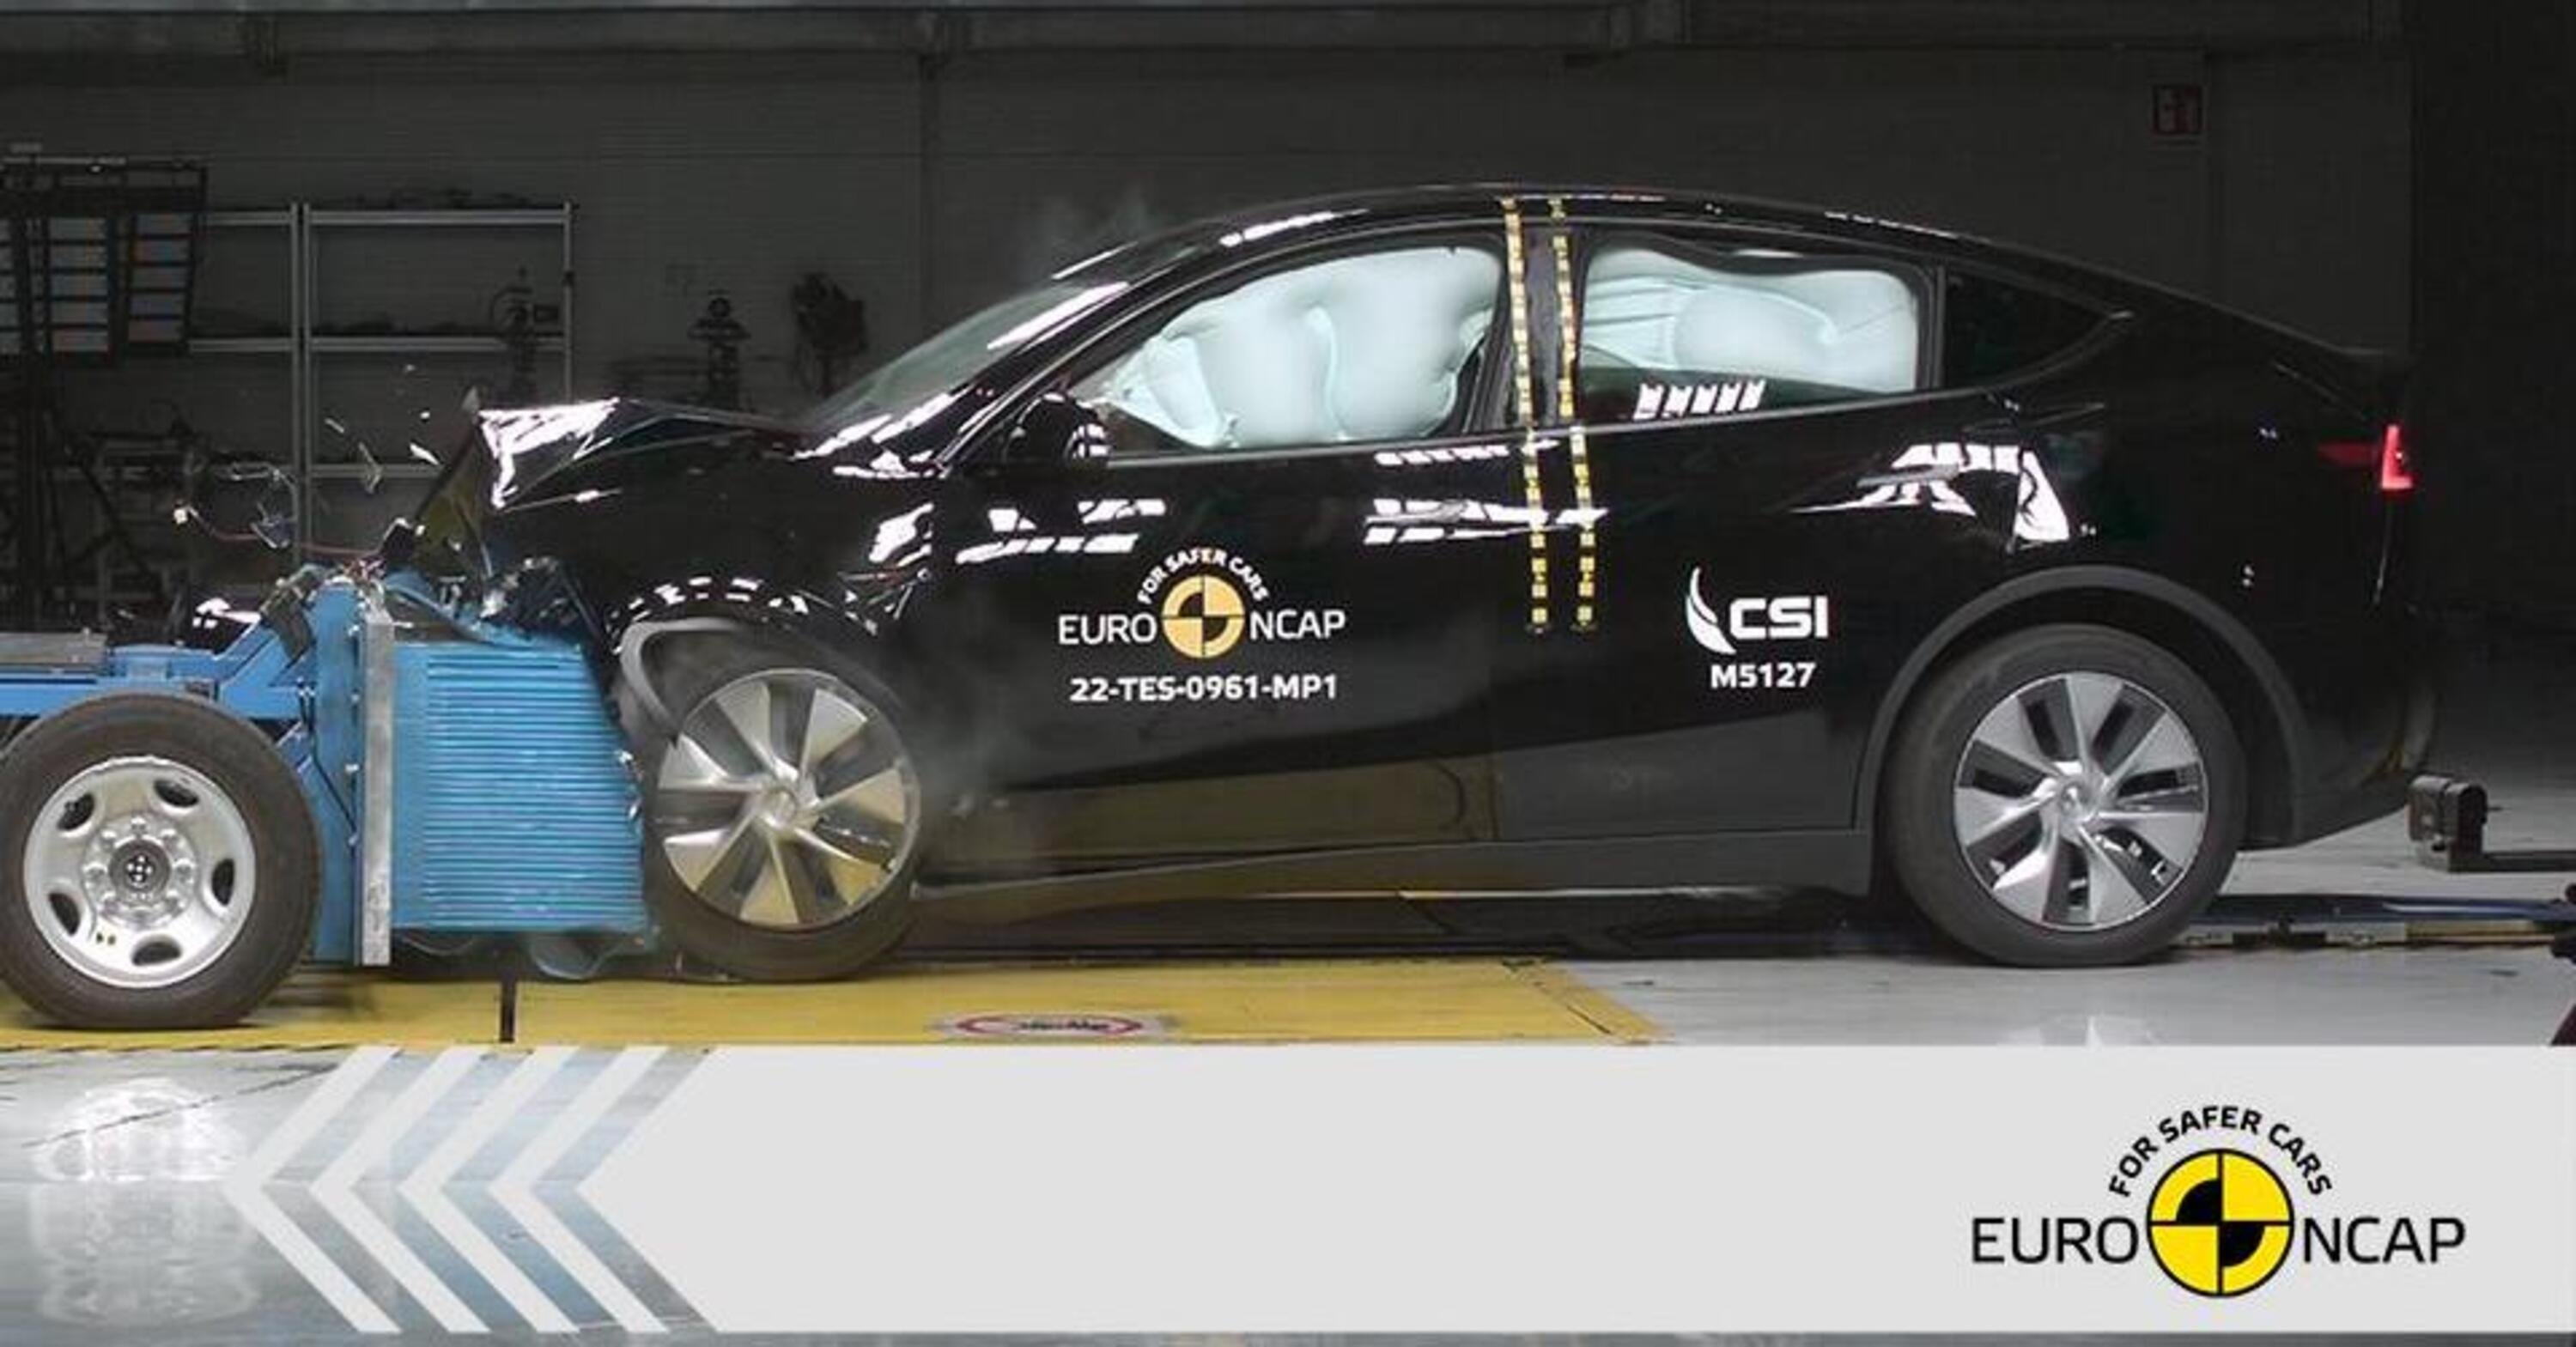 Nuovi crash test EuroNCAP, brilla la Tesla ma anche le asiatiche